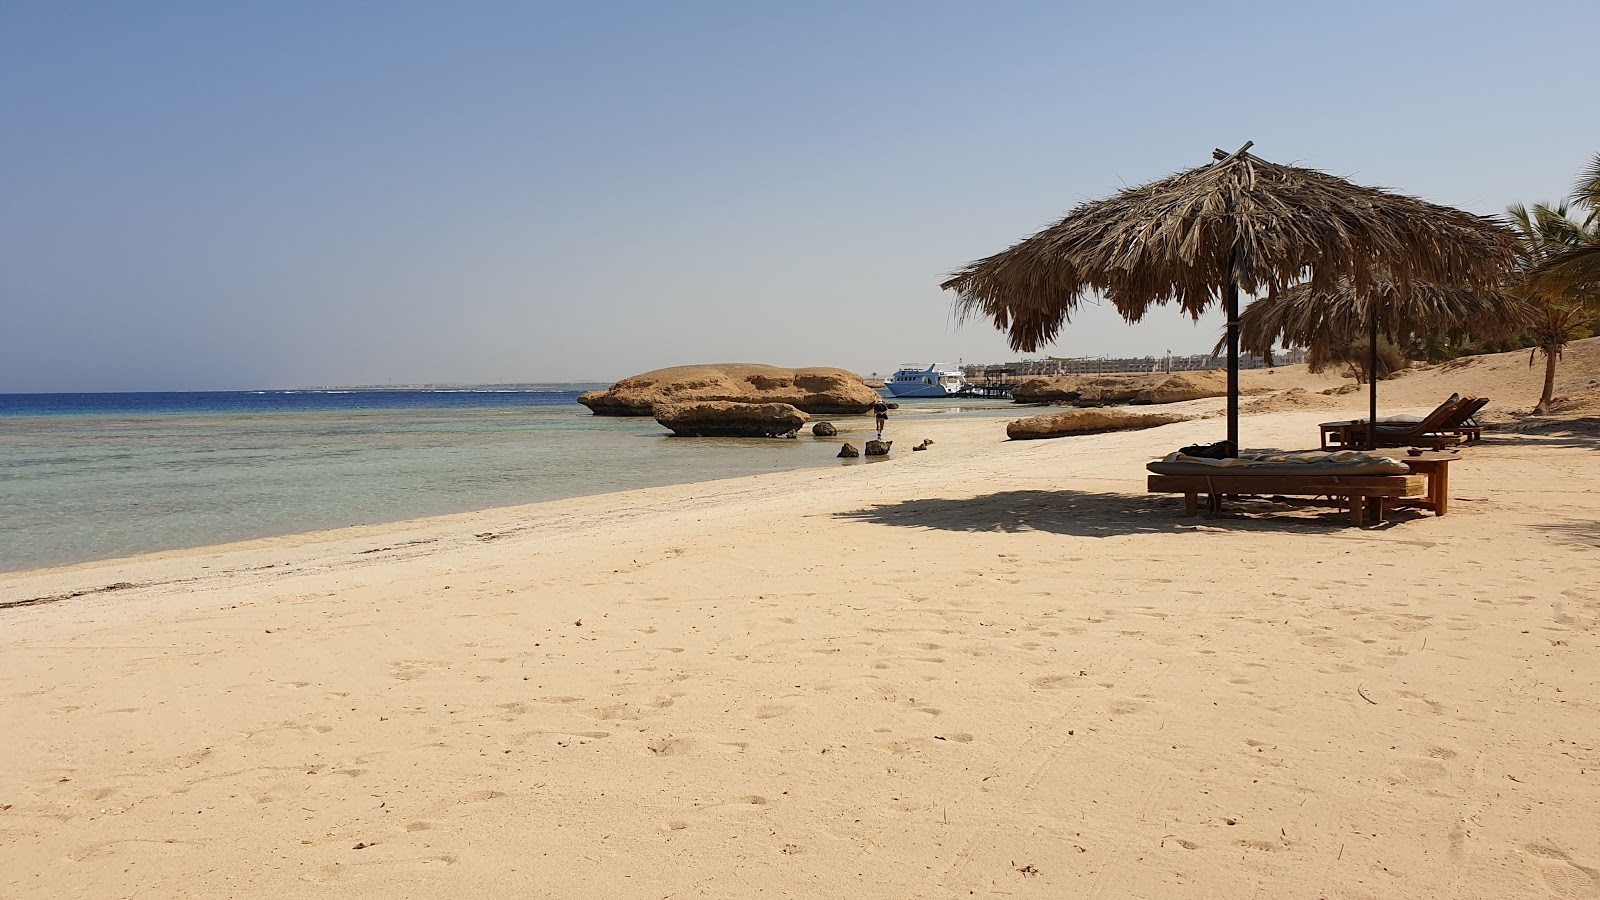 Fotografie cu Mangrove Bay Resort cu o suprafață de nisip strălucitor